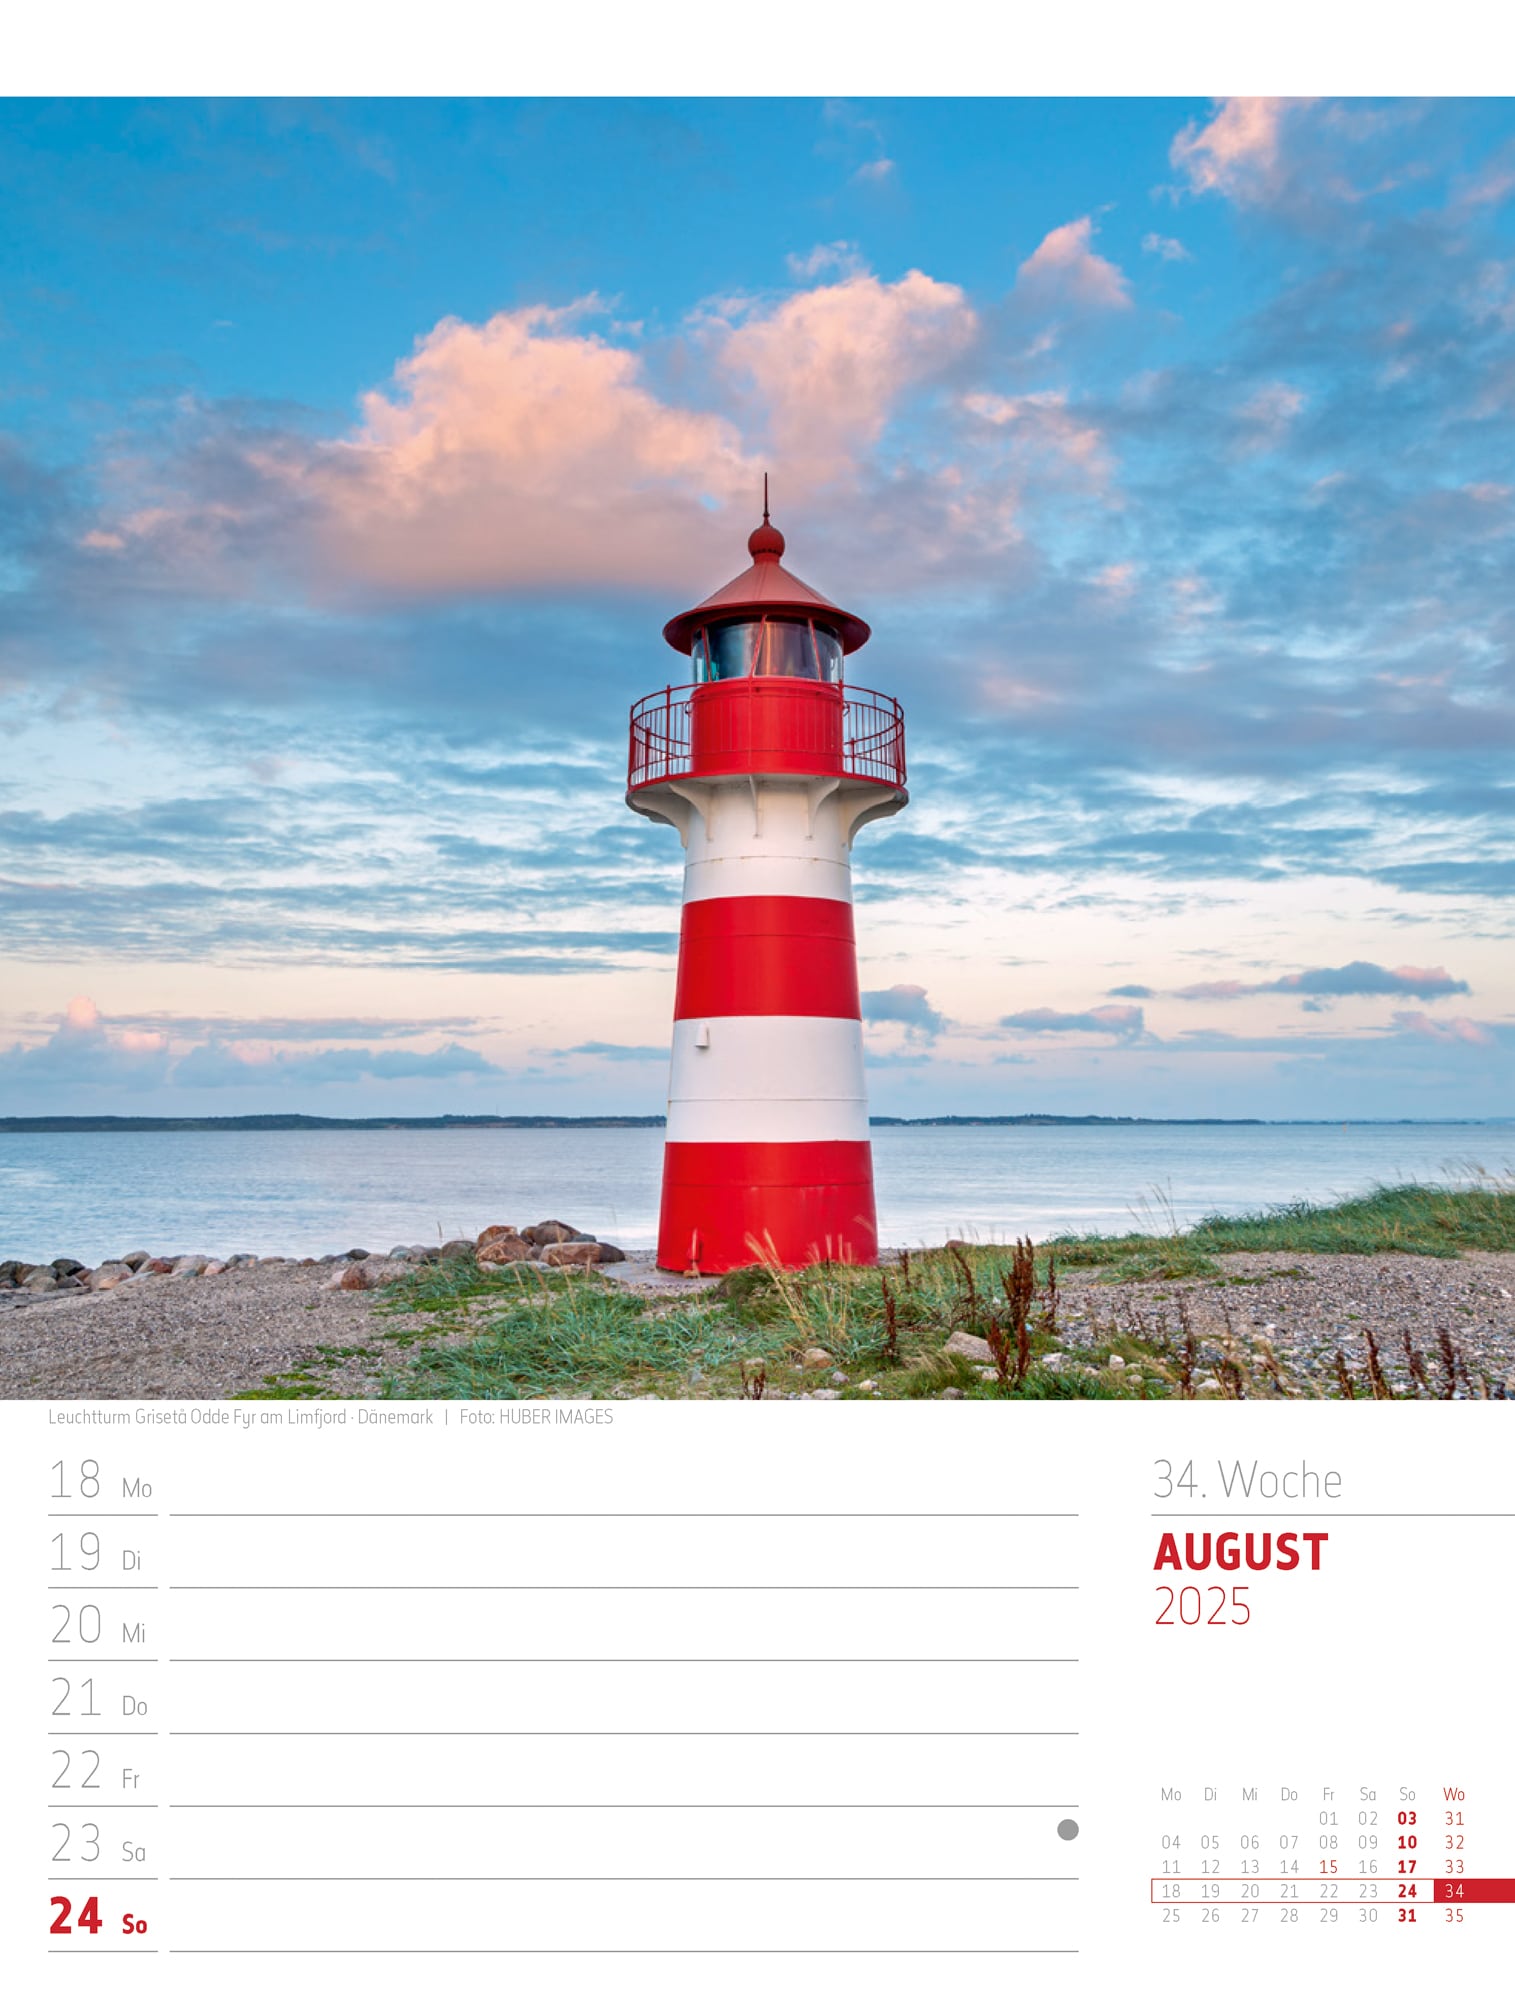 Ackermann Calendar Scandinavia 2025 - Weekly Planner - Inside View 37